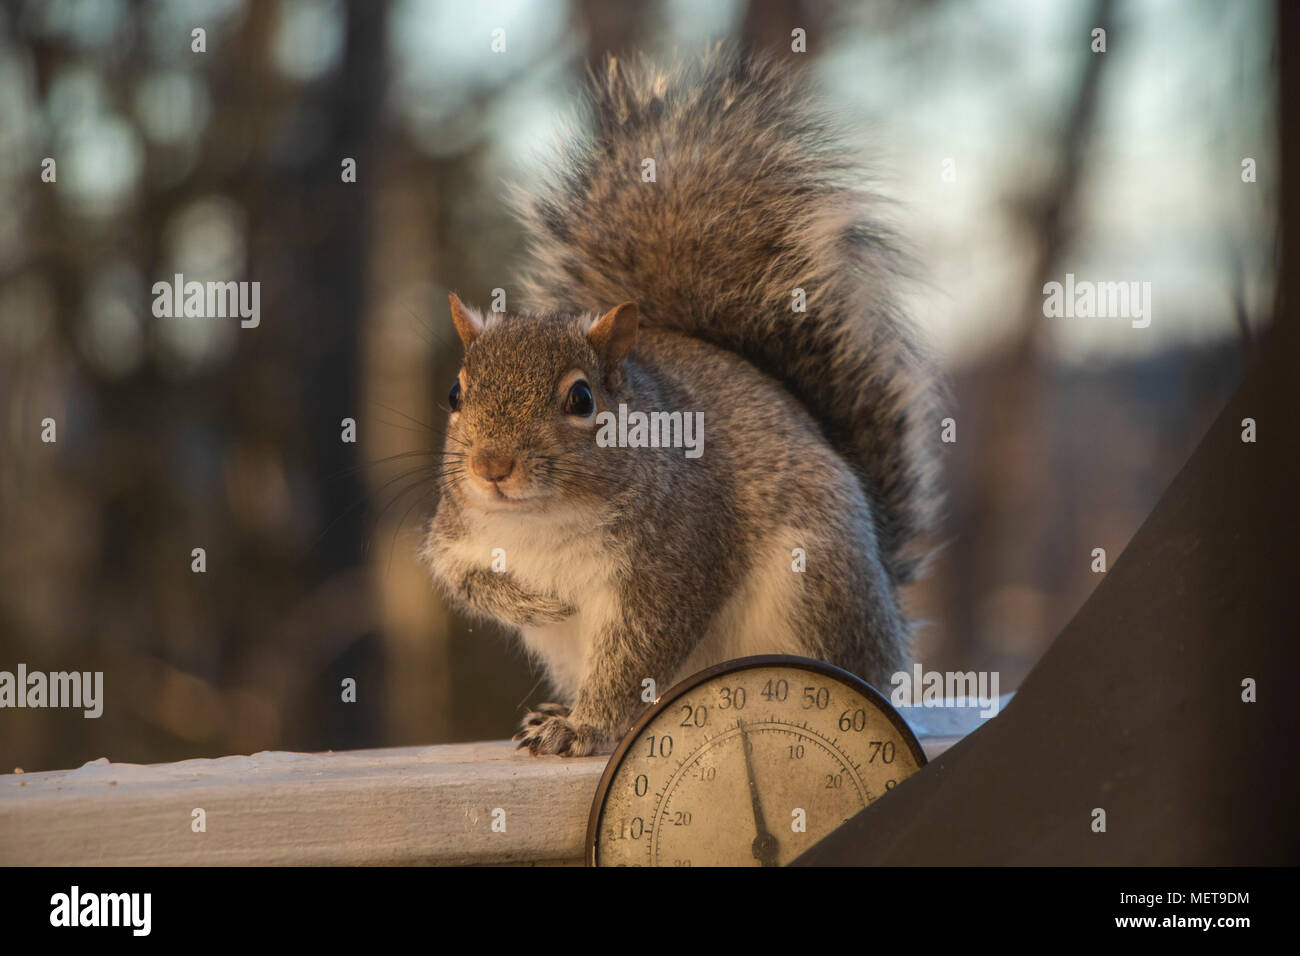 Fotografia di uno scoiattolo nelle prime ore del mattino, catturata su un teleobiettivo con zoom. Foto Stock